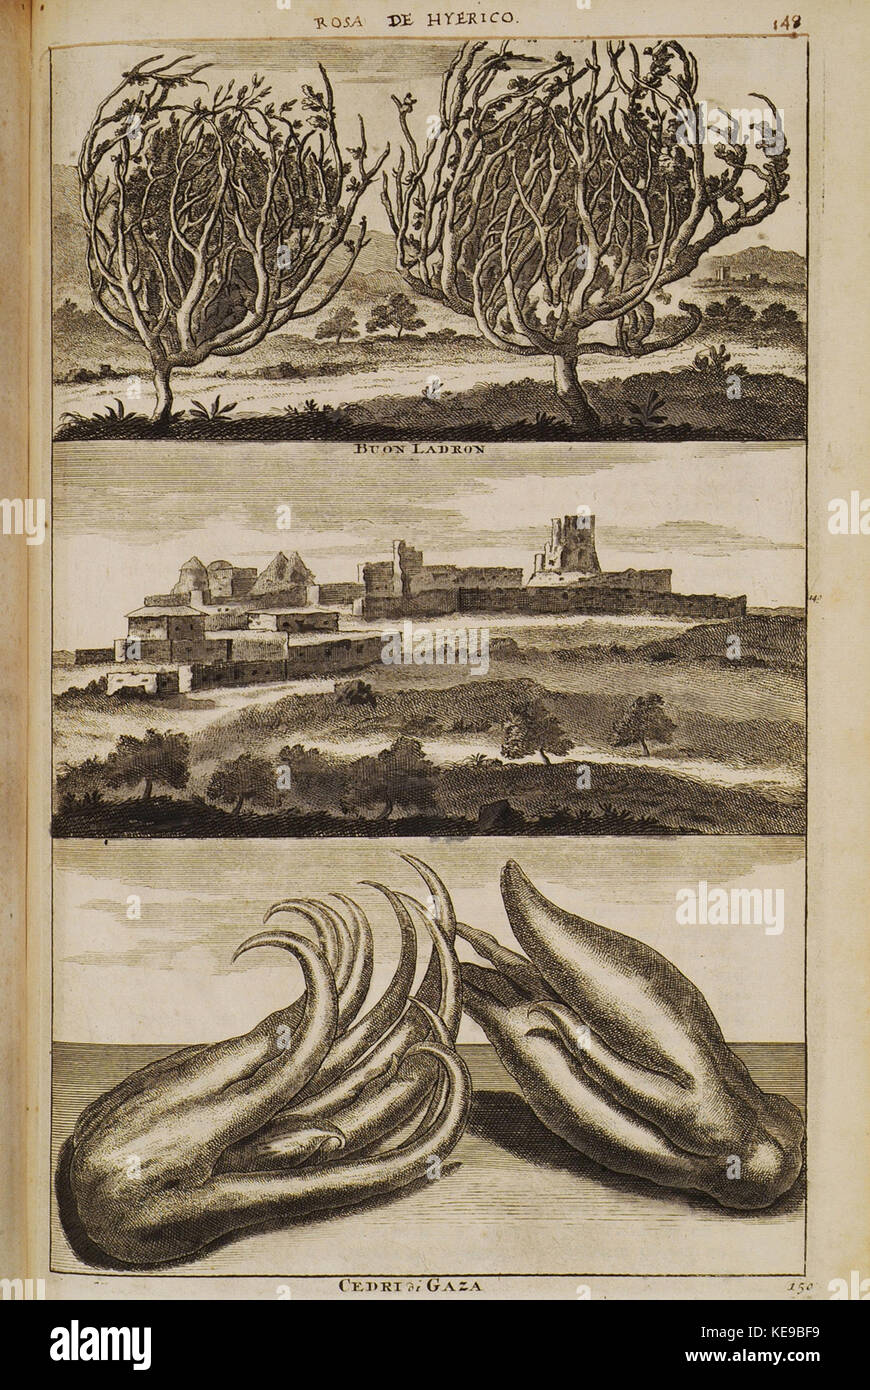 Rosa de Hyerico (148), Buon Ladron (149), Cedri di Gaza (150)   Bruyn Cornelis De   1714 Stock Photo